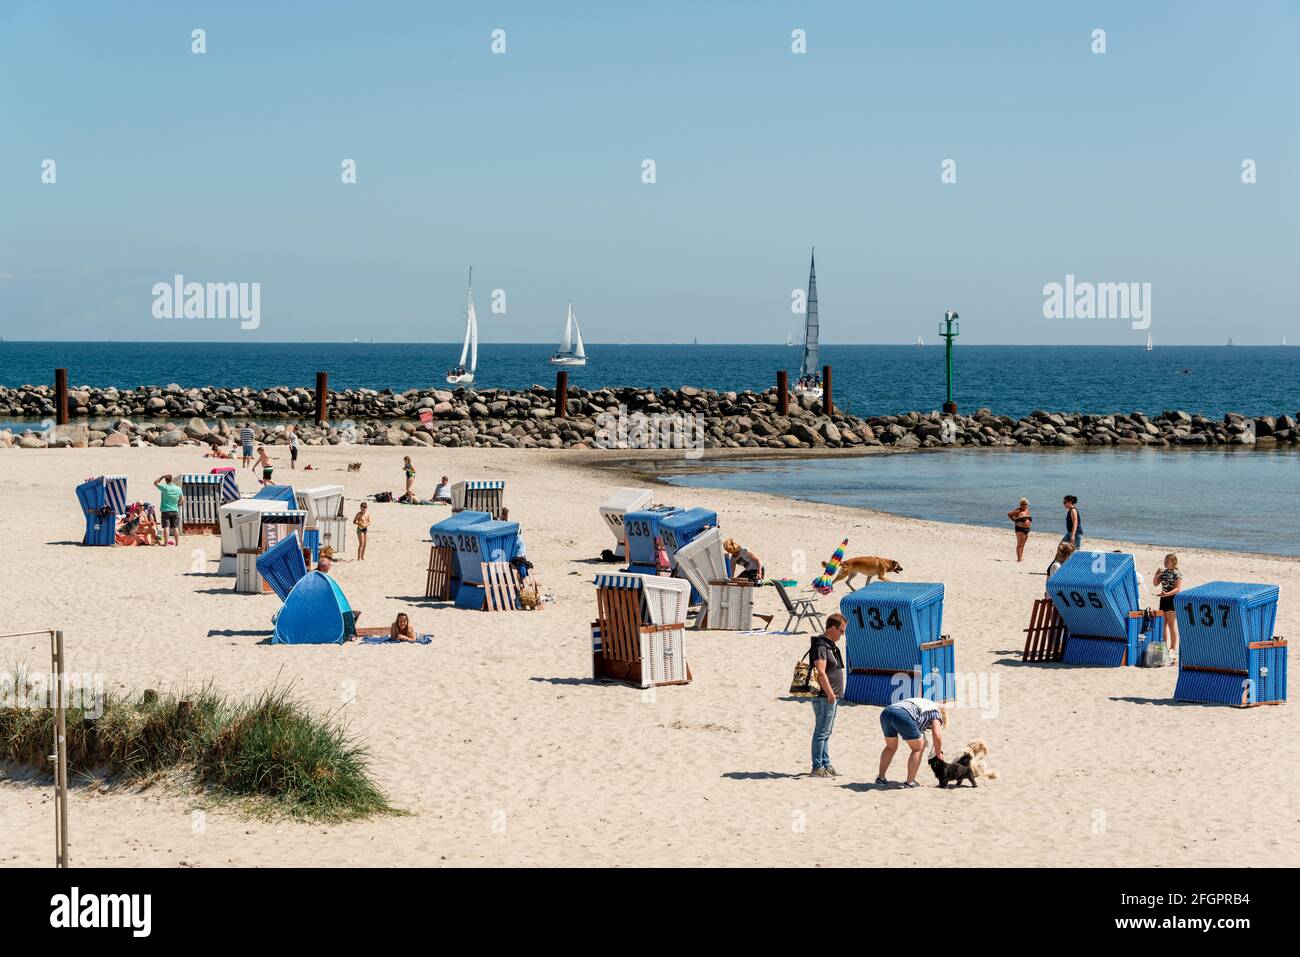 Schleswig-Holstein, abril de 2021 - Sommerliche Impresionen aus dem Ostseebad damp mit Strandmotiven Foto de stock